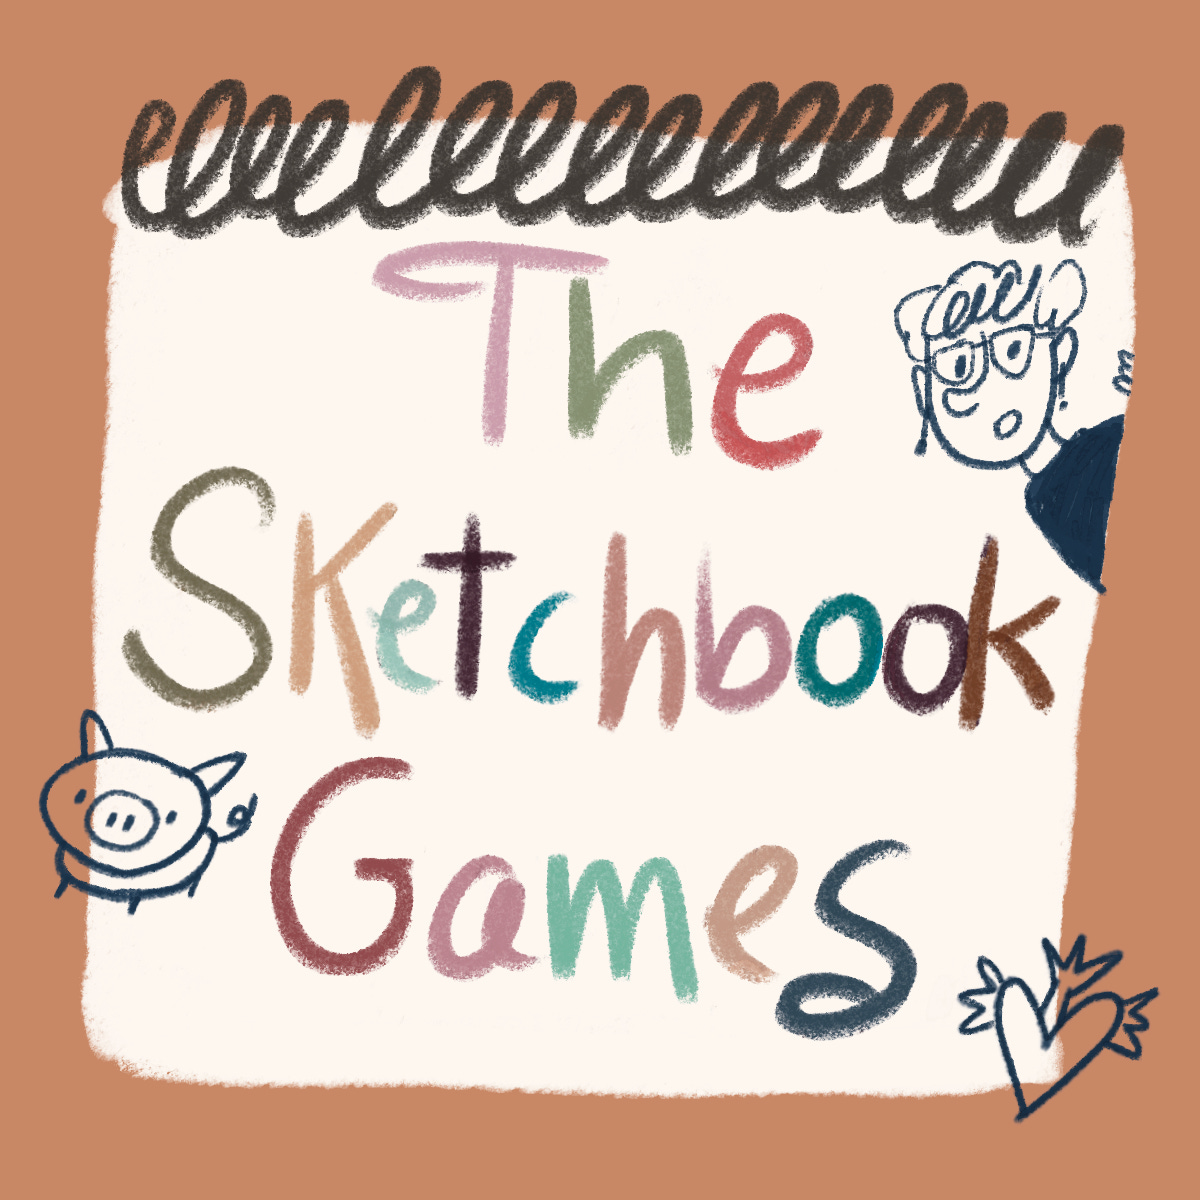 The sketchbook games